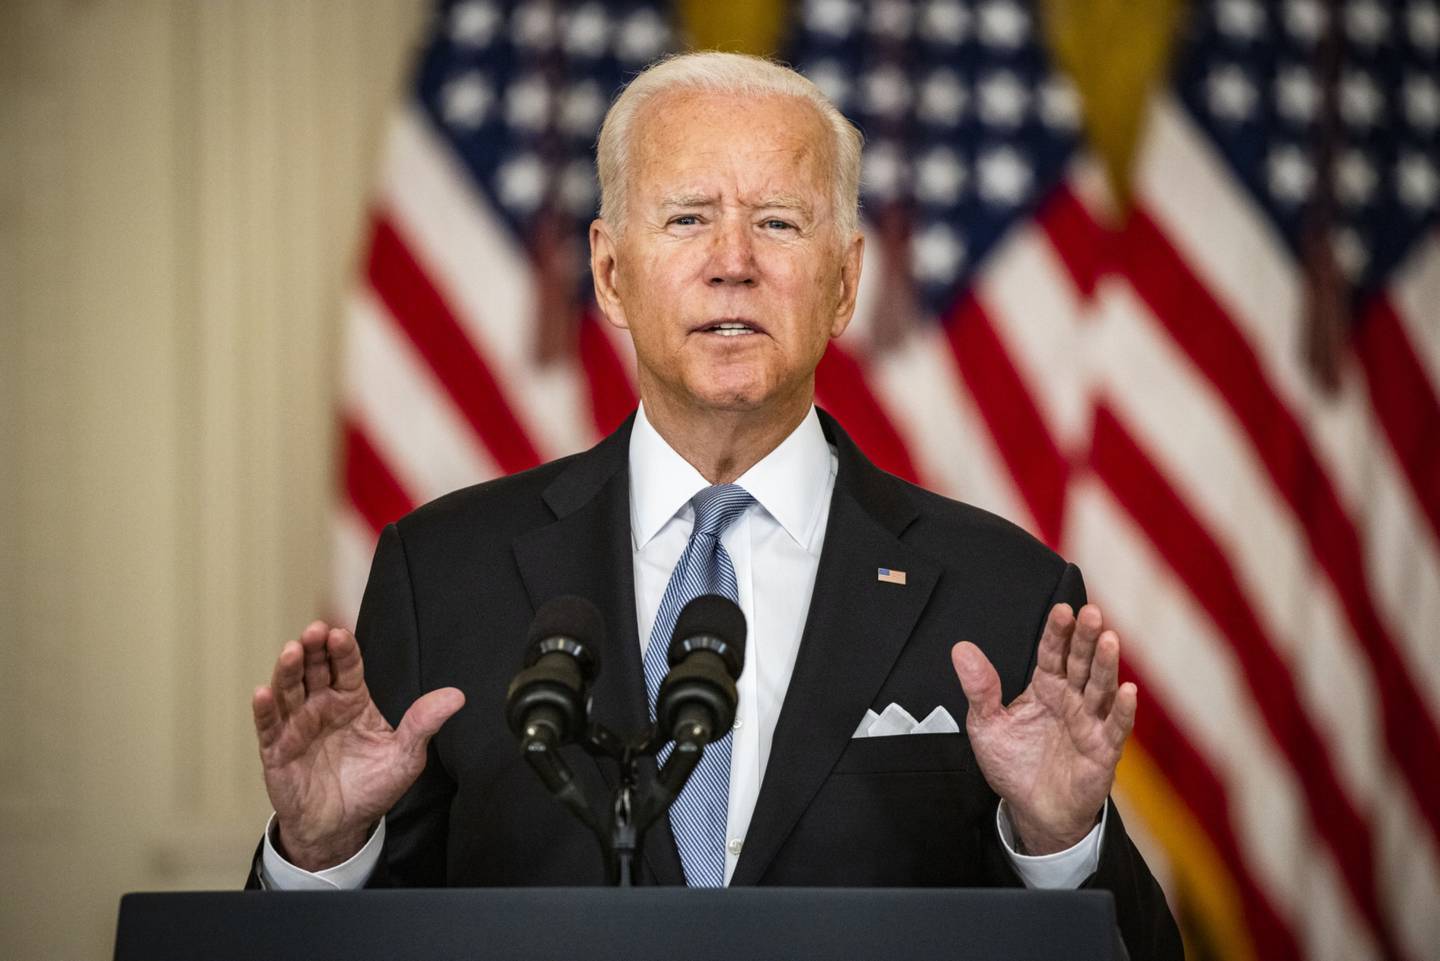 President Joe Biden speaks at the White House on Aug. 16.